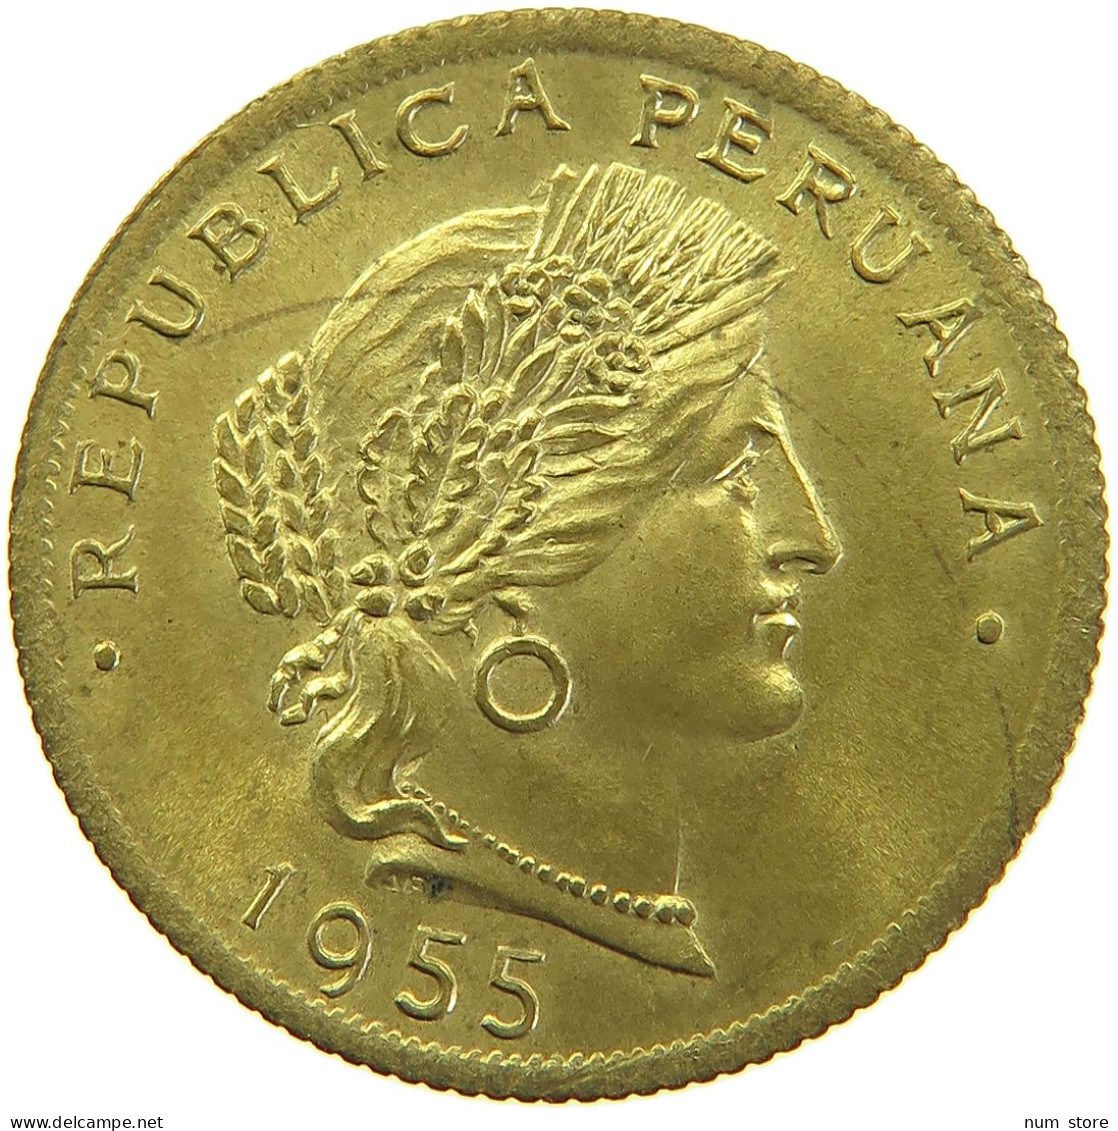 PERU 20 CENTAVOS 1955 #t030 0097 - Peru